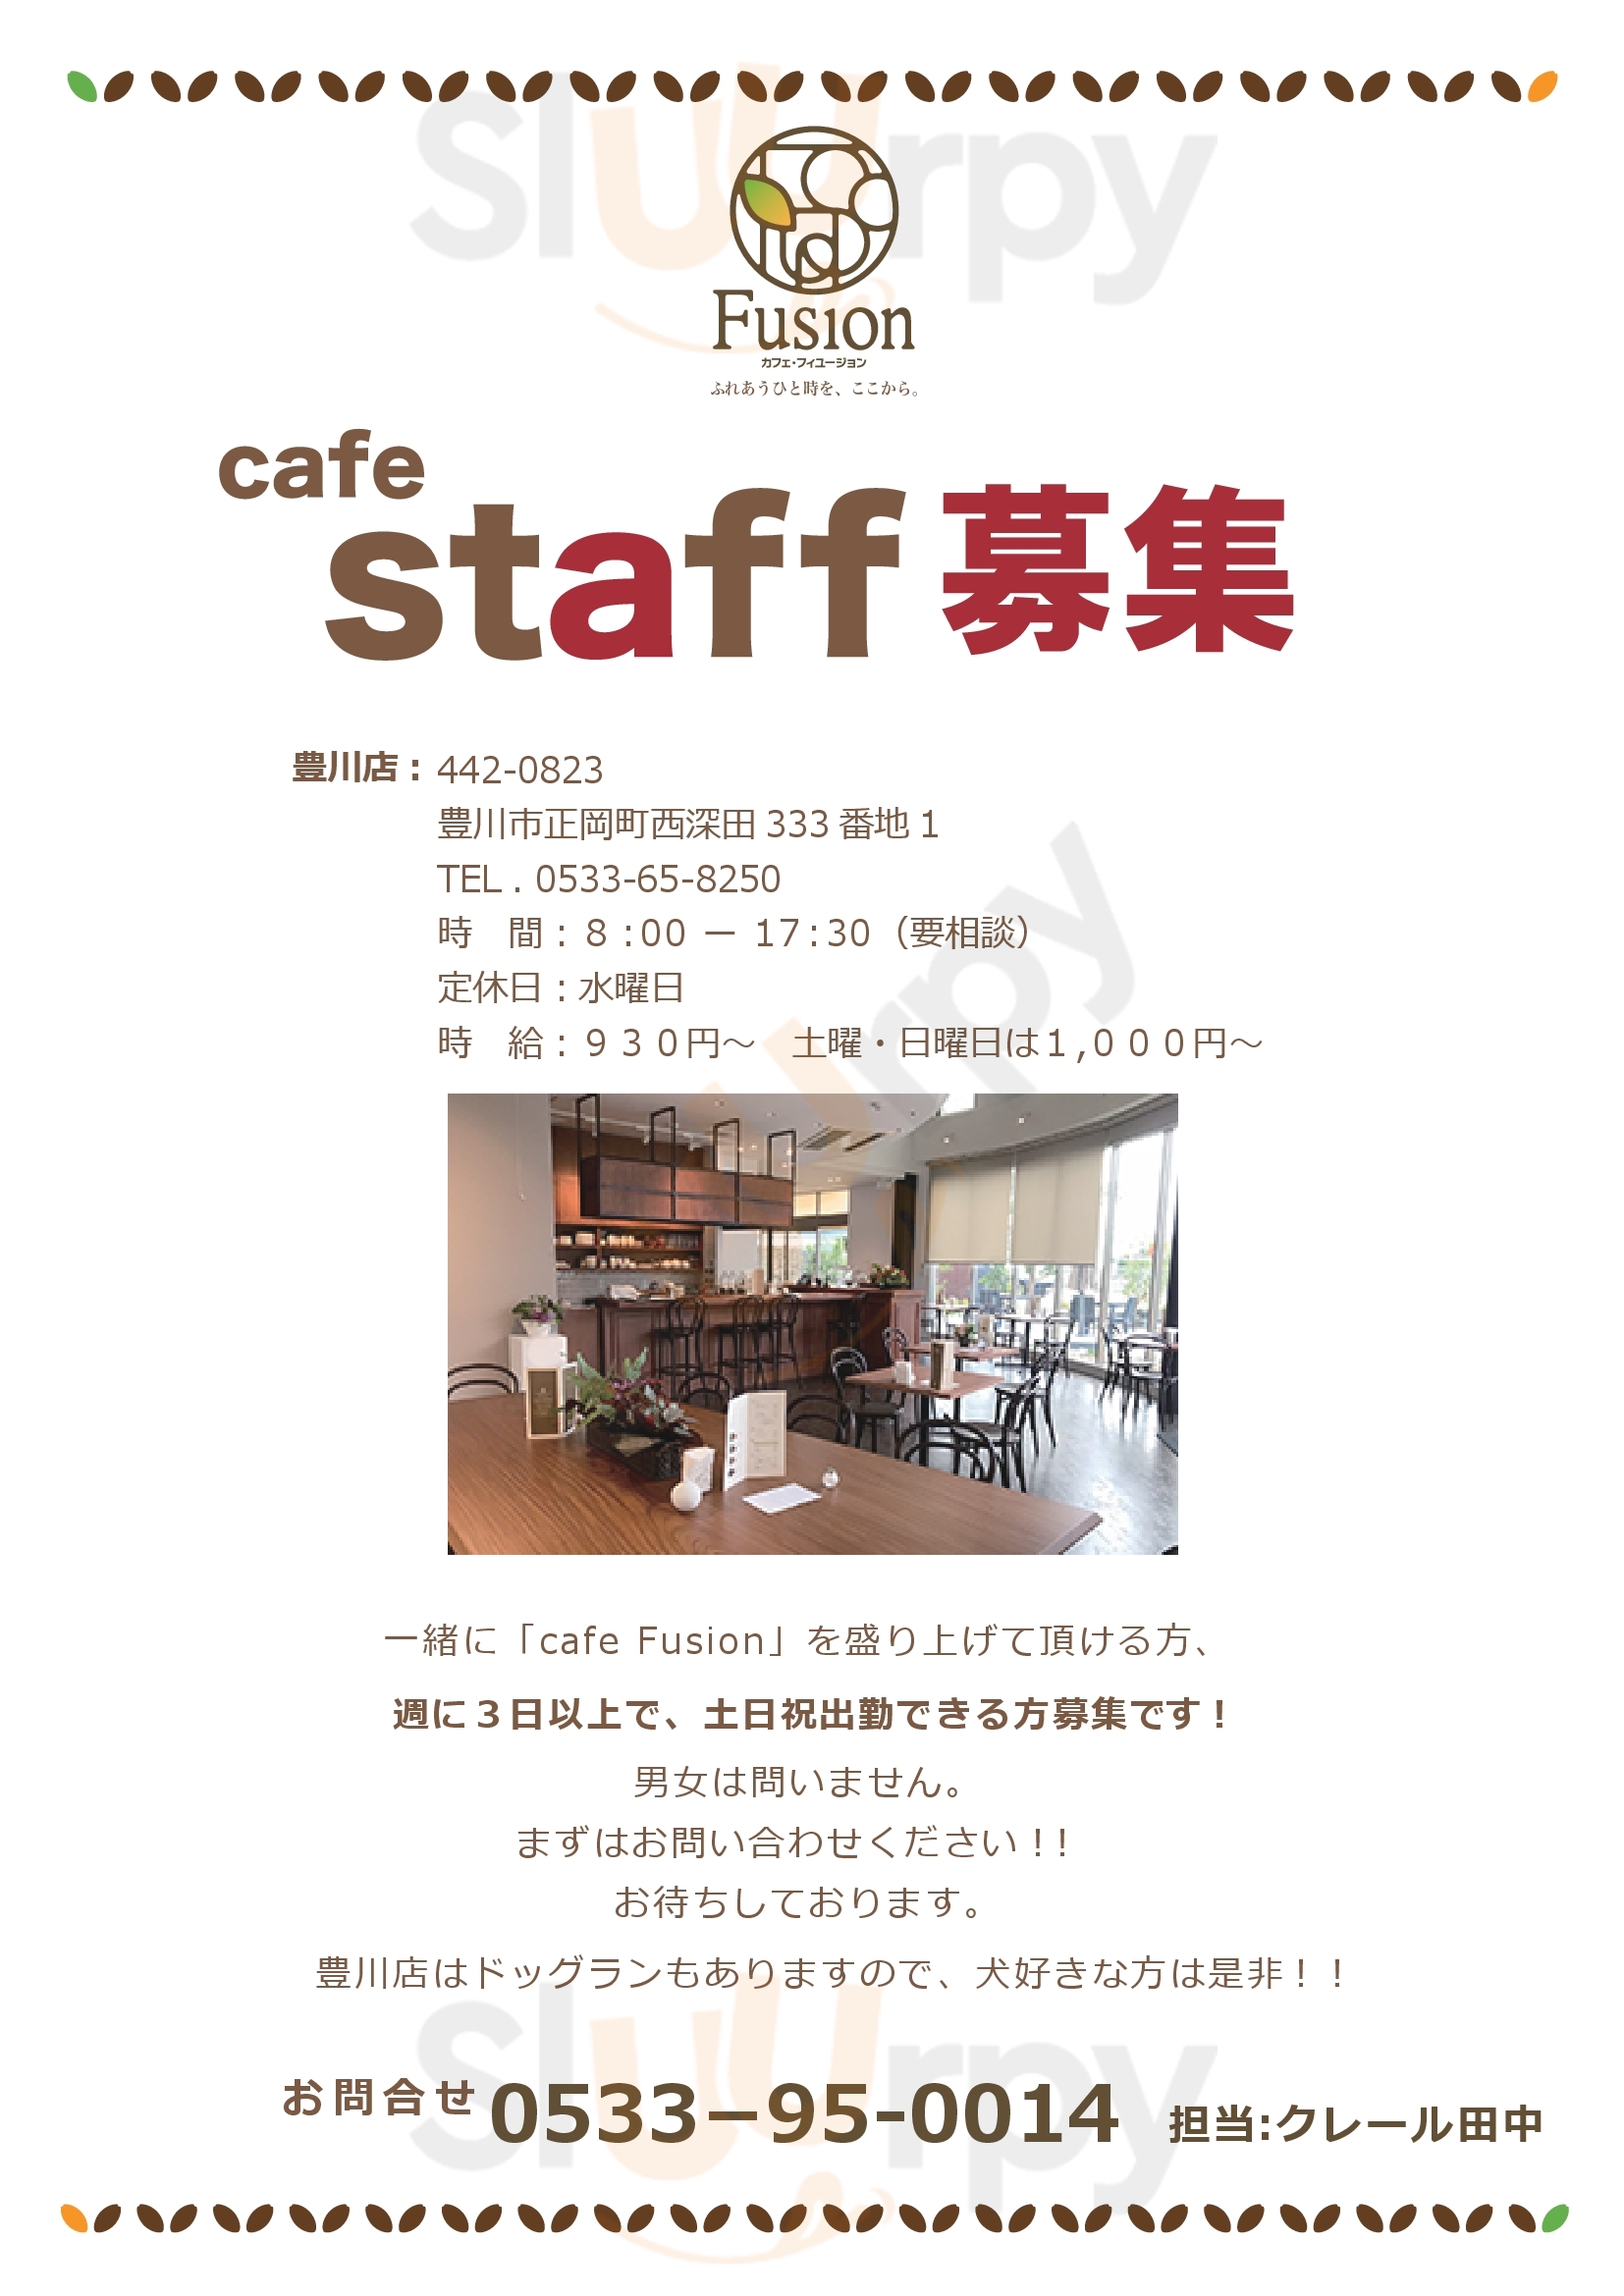 Cafeフィュージョン 豊橋市 Menu - 1